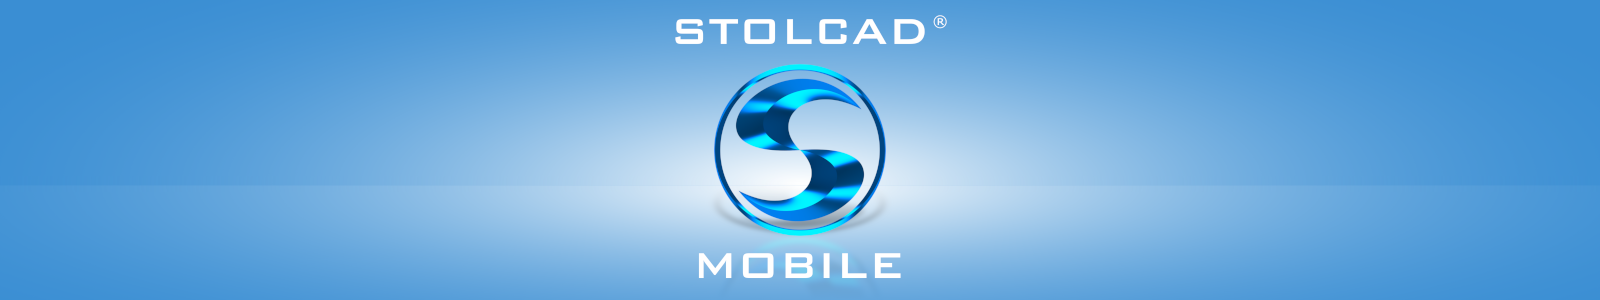 Stolcad Mobile - aplikacja do wyceny okien